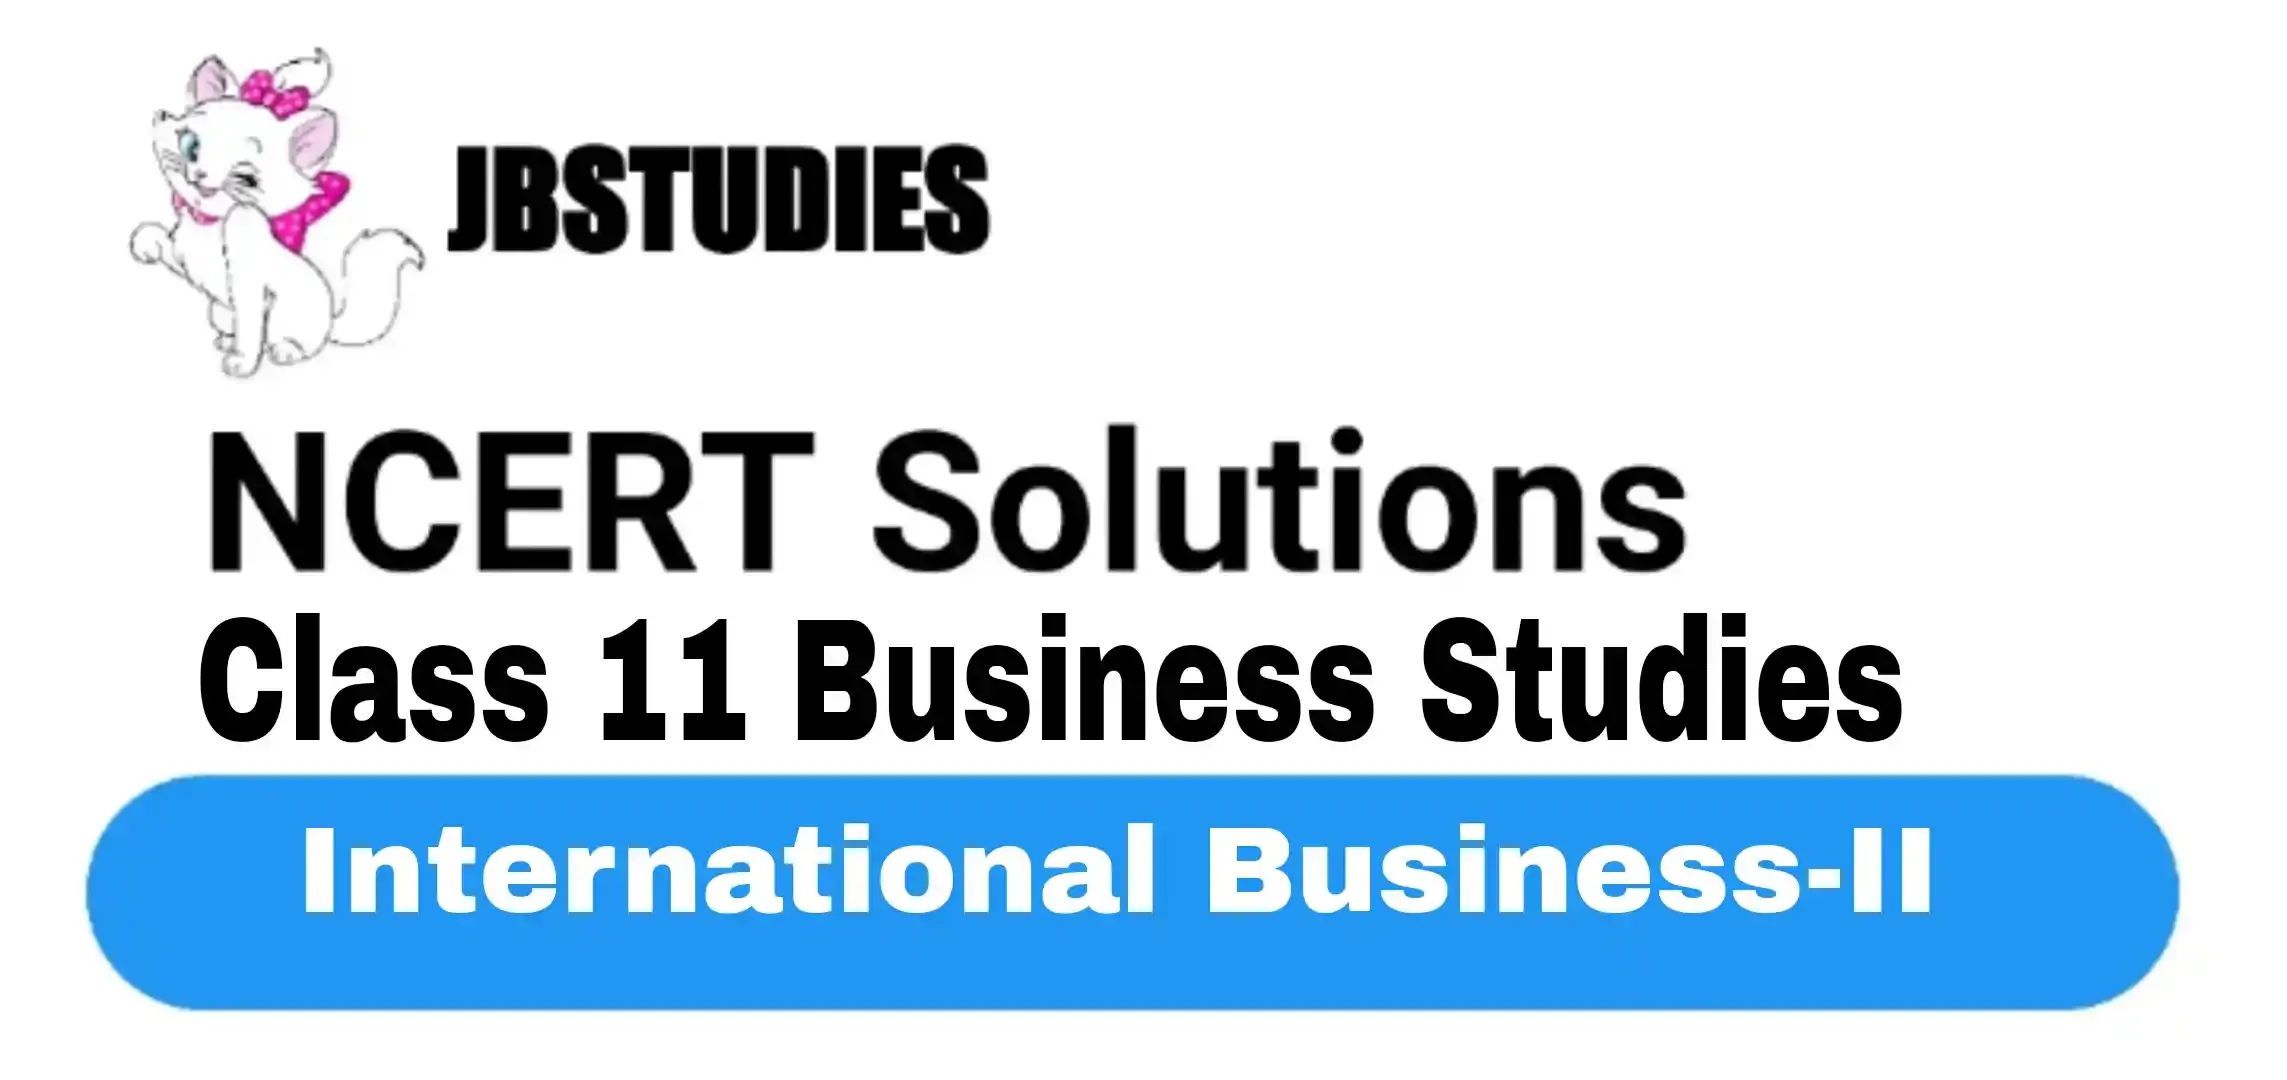 Solutions Class 11 Business Studies Chapter -12 (International Business-II)